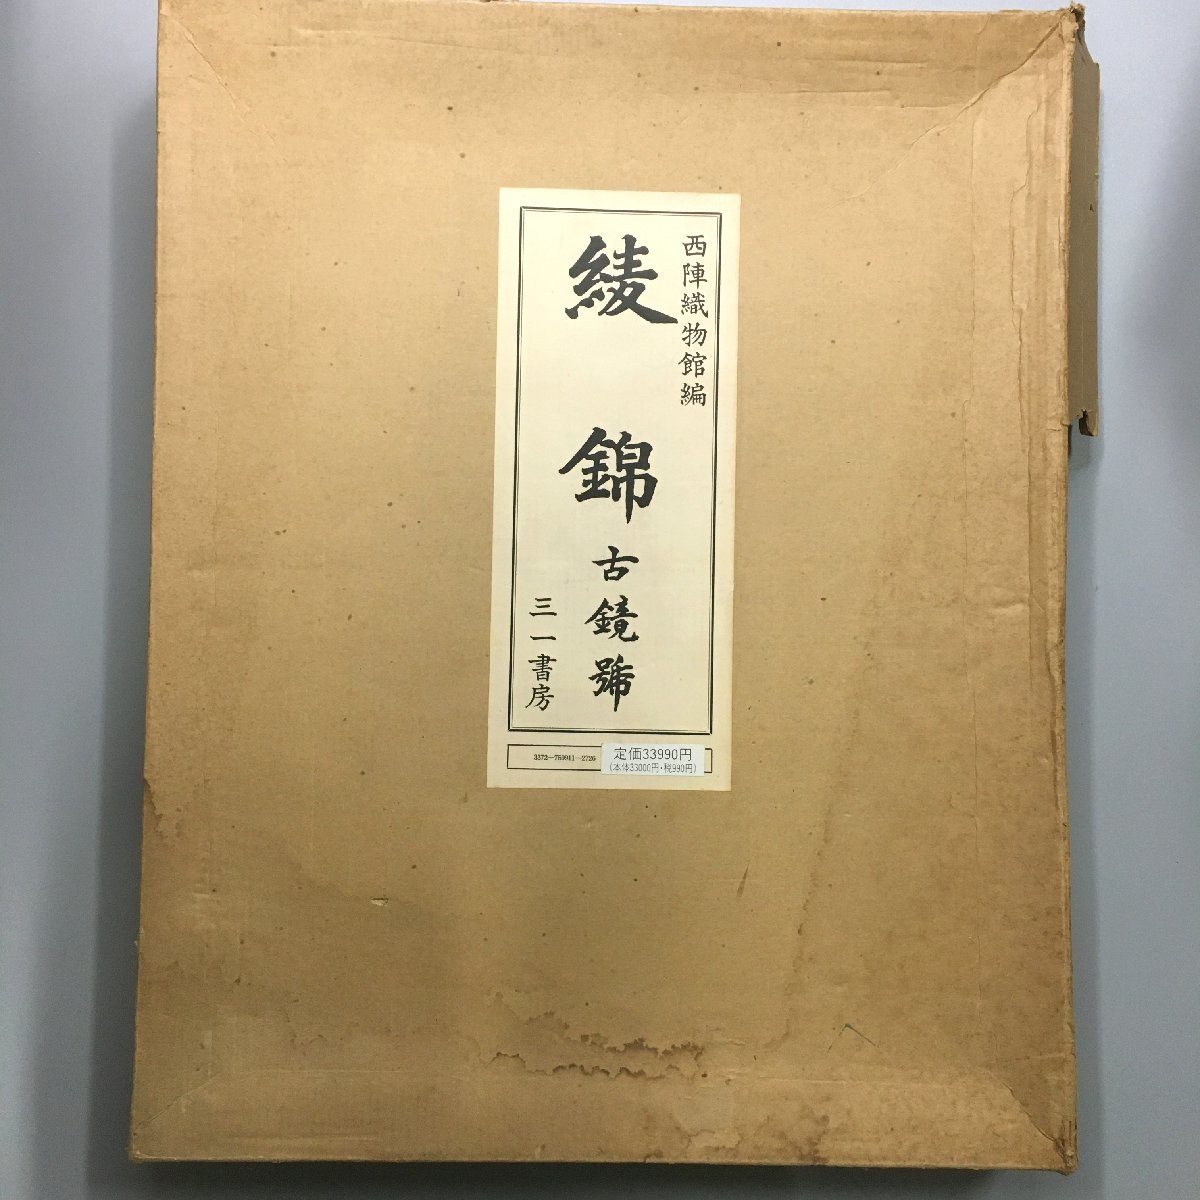 品質が 大型本『綾錦 古鏡号』 限定500部 昭和50年 復刻版 作品集